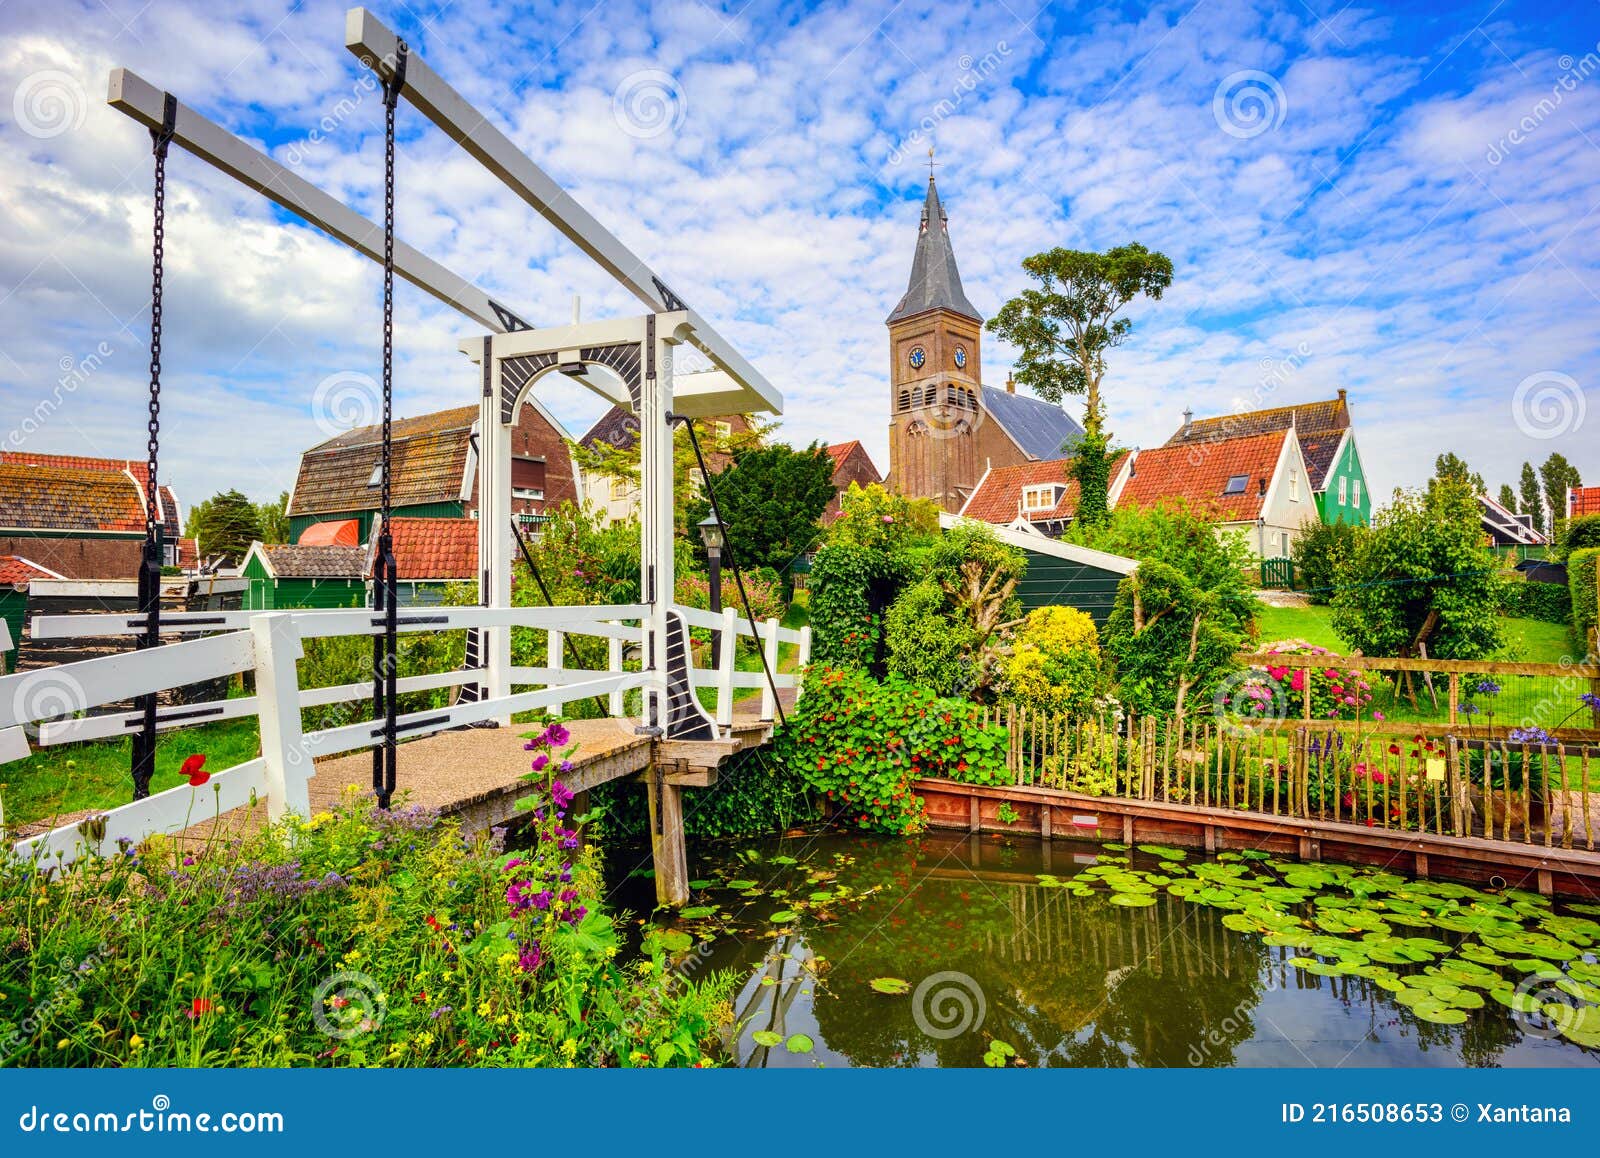 Marken village, Northern Holland, Netherlands